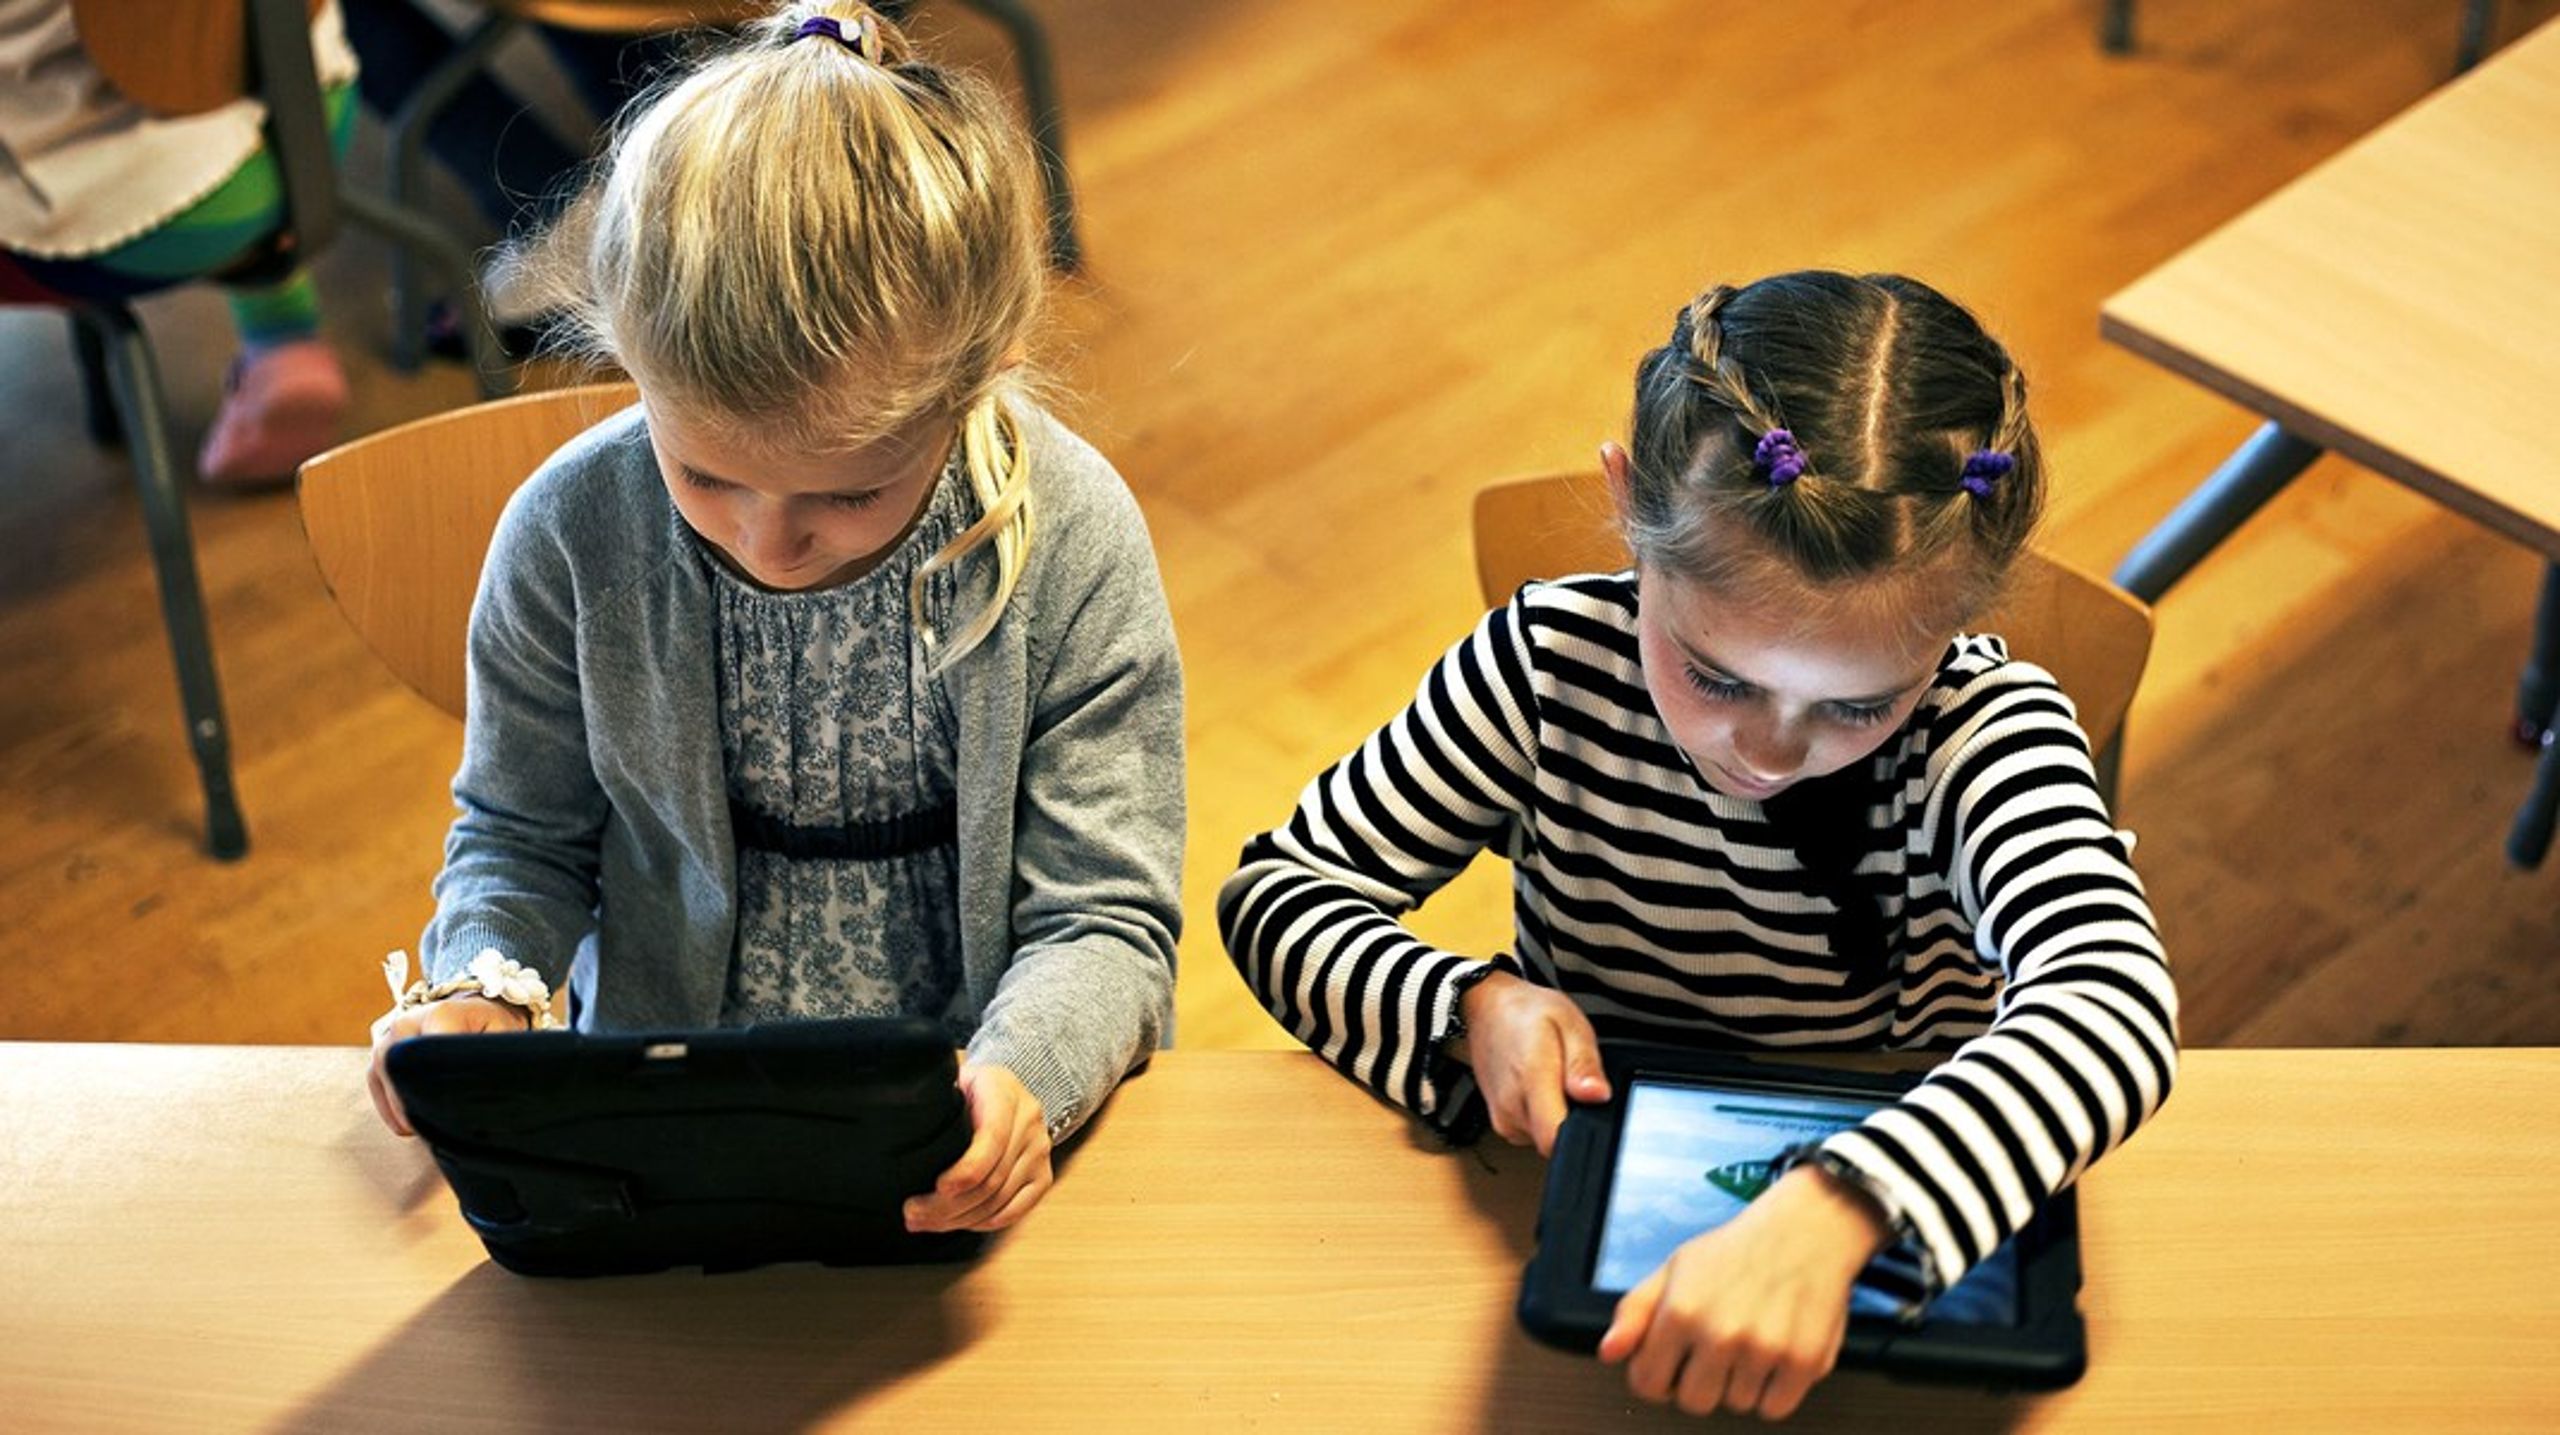 Det kræver blandt andet et stærkt forældresamarbejde, hvis folkeskolen skal lykkes med at løfte ansvaret om at bekæmpe digitale krænkelser af børn, skriver Regitze Flannov.